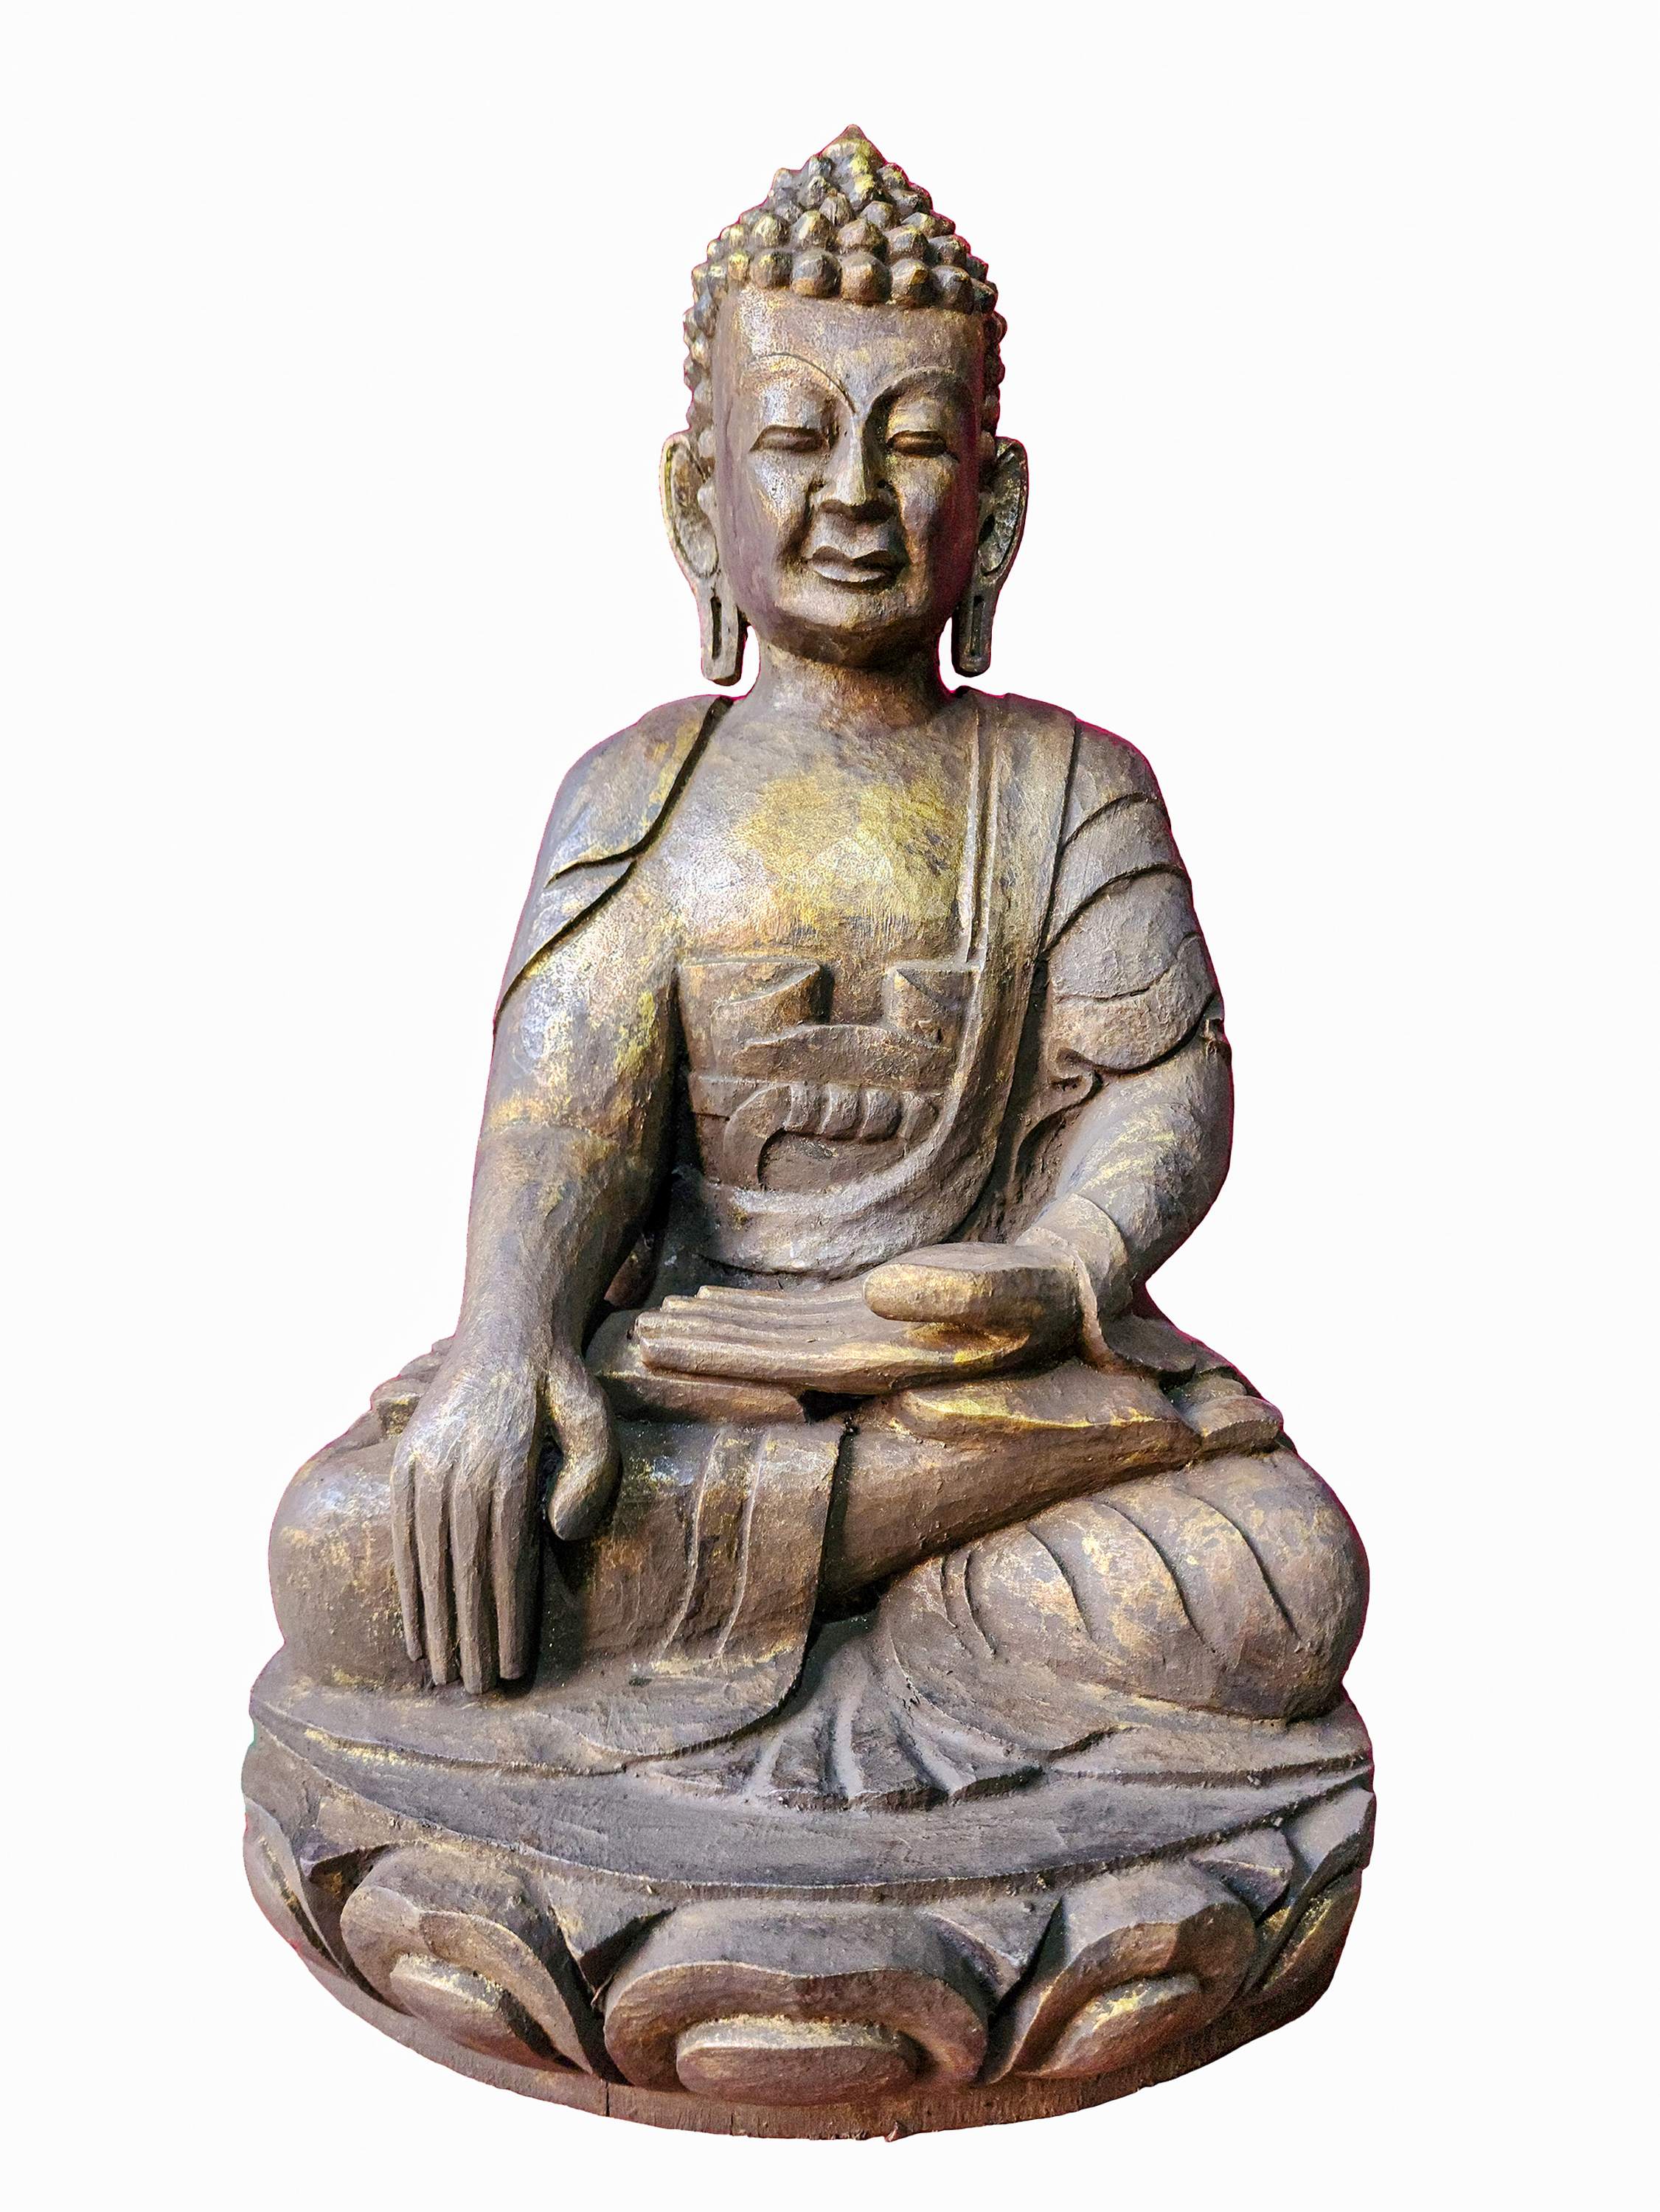 Buddhist Handmade Wooden Statue Of Shakyamuni Buddha